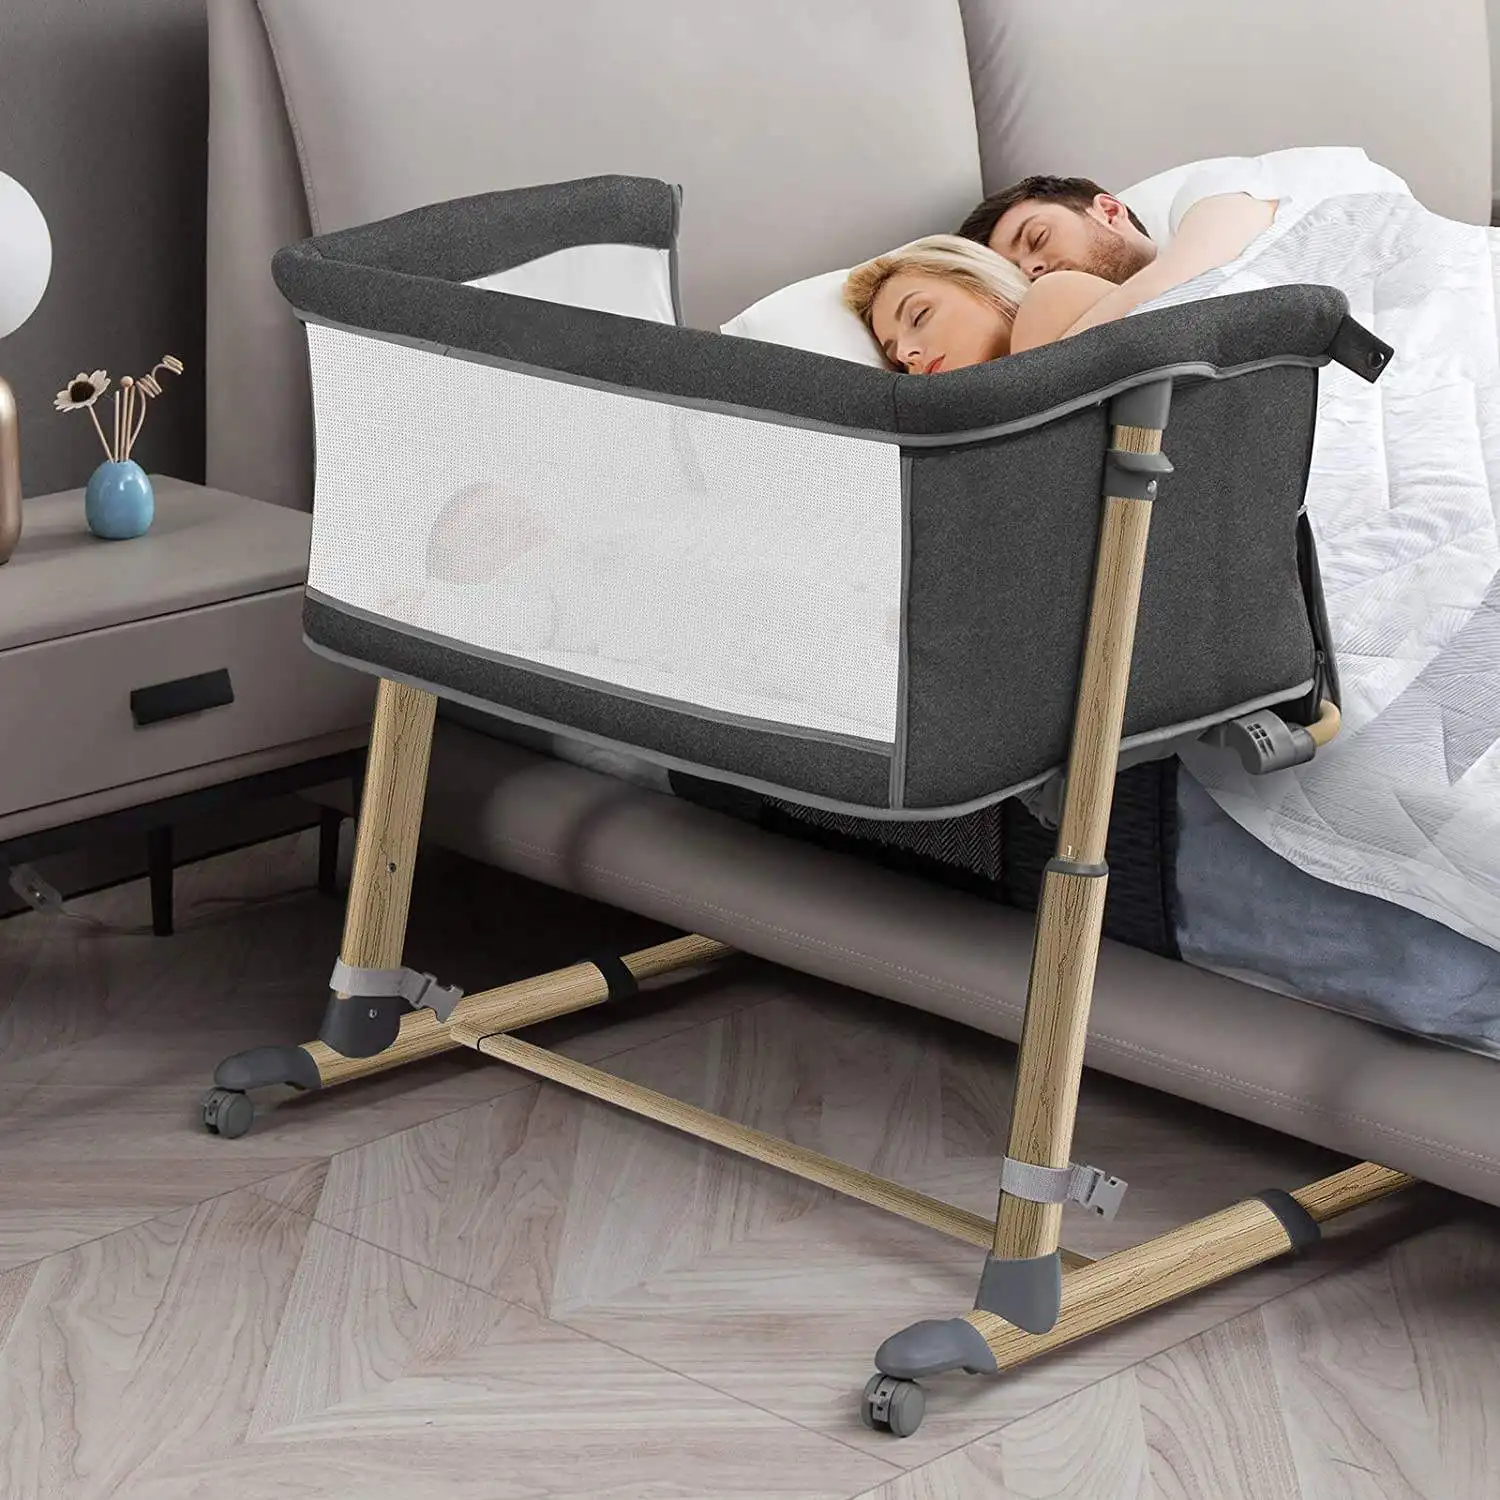 Dobrável portátil co-sleeping segurança do bebê viagem acampamento berço berço berço cama de bebê berço lateral